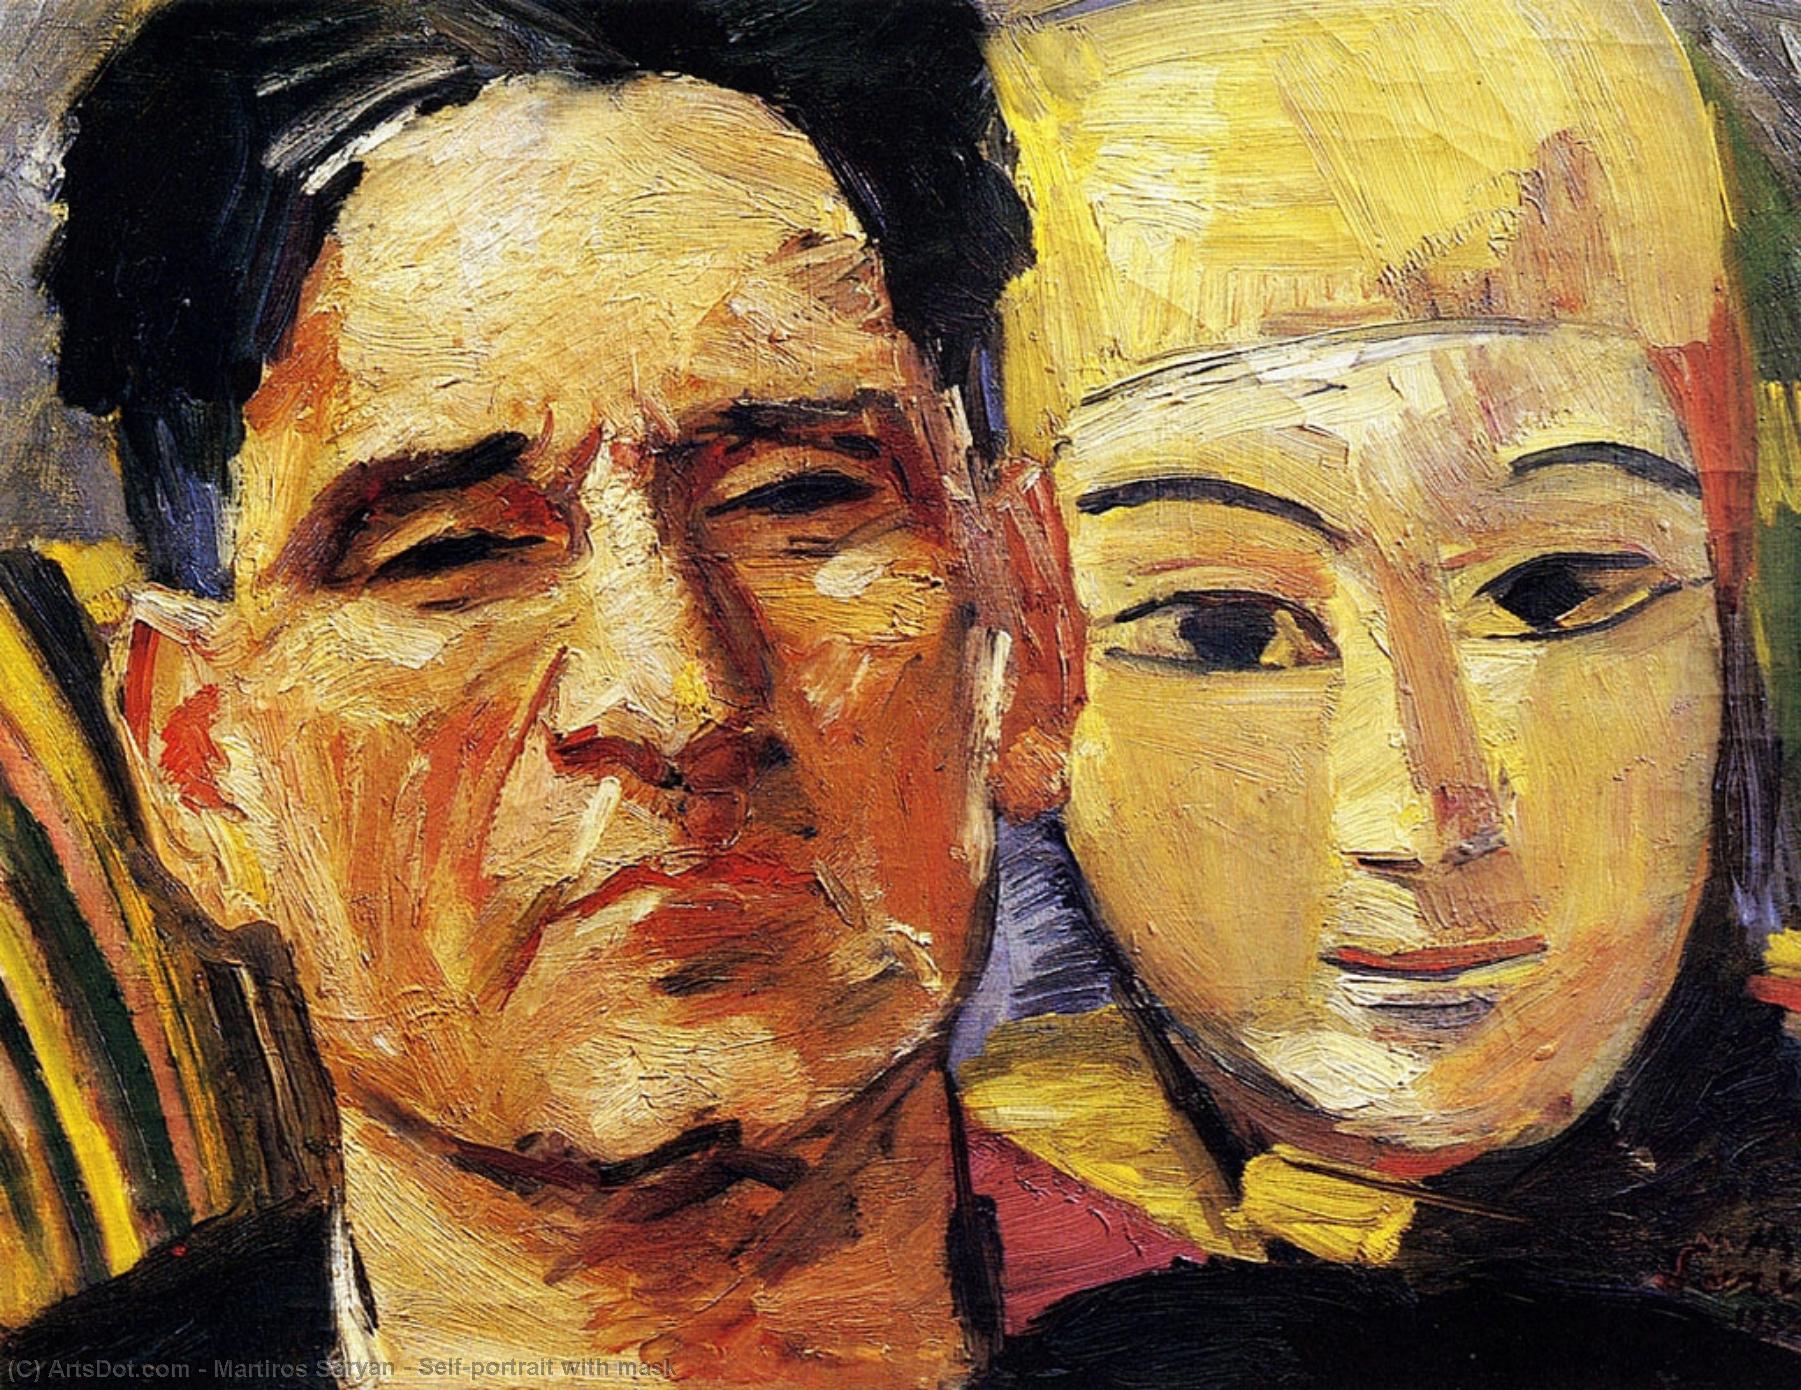 WikiOO.org - Εγκυκλοπαίδεια Καλών Τεχνών - Ζωγραφική, έργα τέχνης Martiros Saryan - Self-portrait with mask